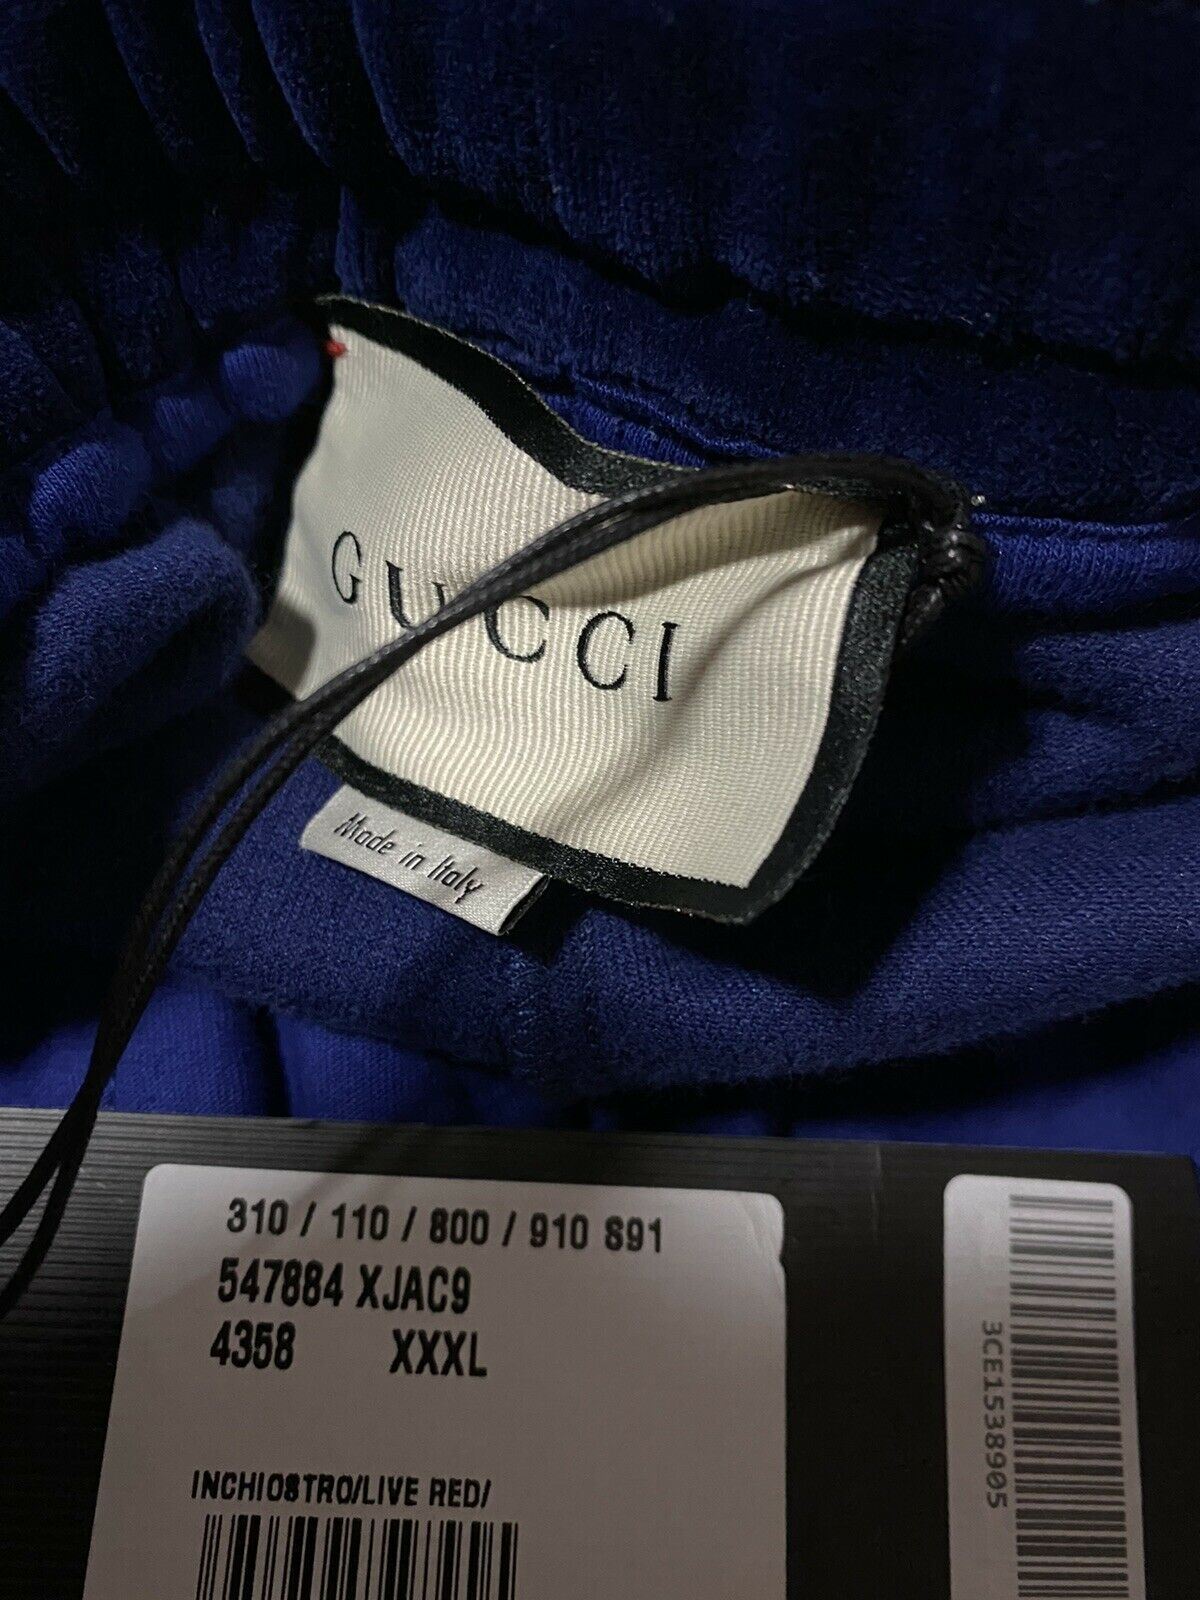 Мужские спортивные штаны Gucci синие, размер XXXL, NWT $1480, сделано в Италии